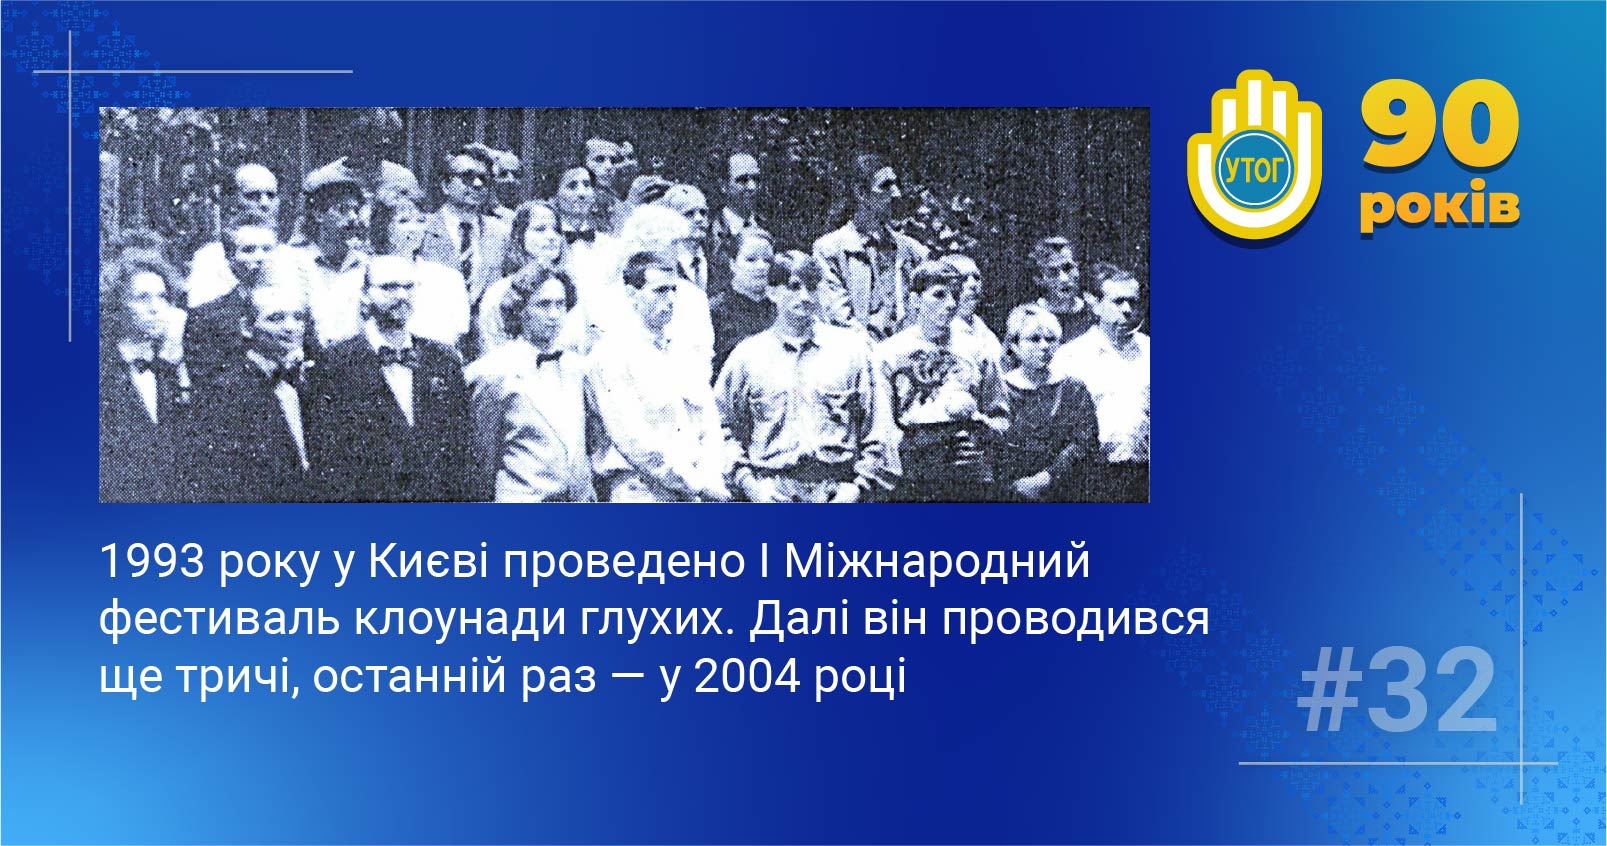 32. 1993 року у Києві проведено I Міжнародний фестиваль клоунади глухих. Далі він проводився ще тричі, останній раз — у 2004 році